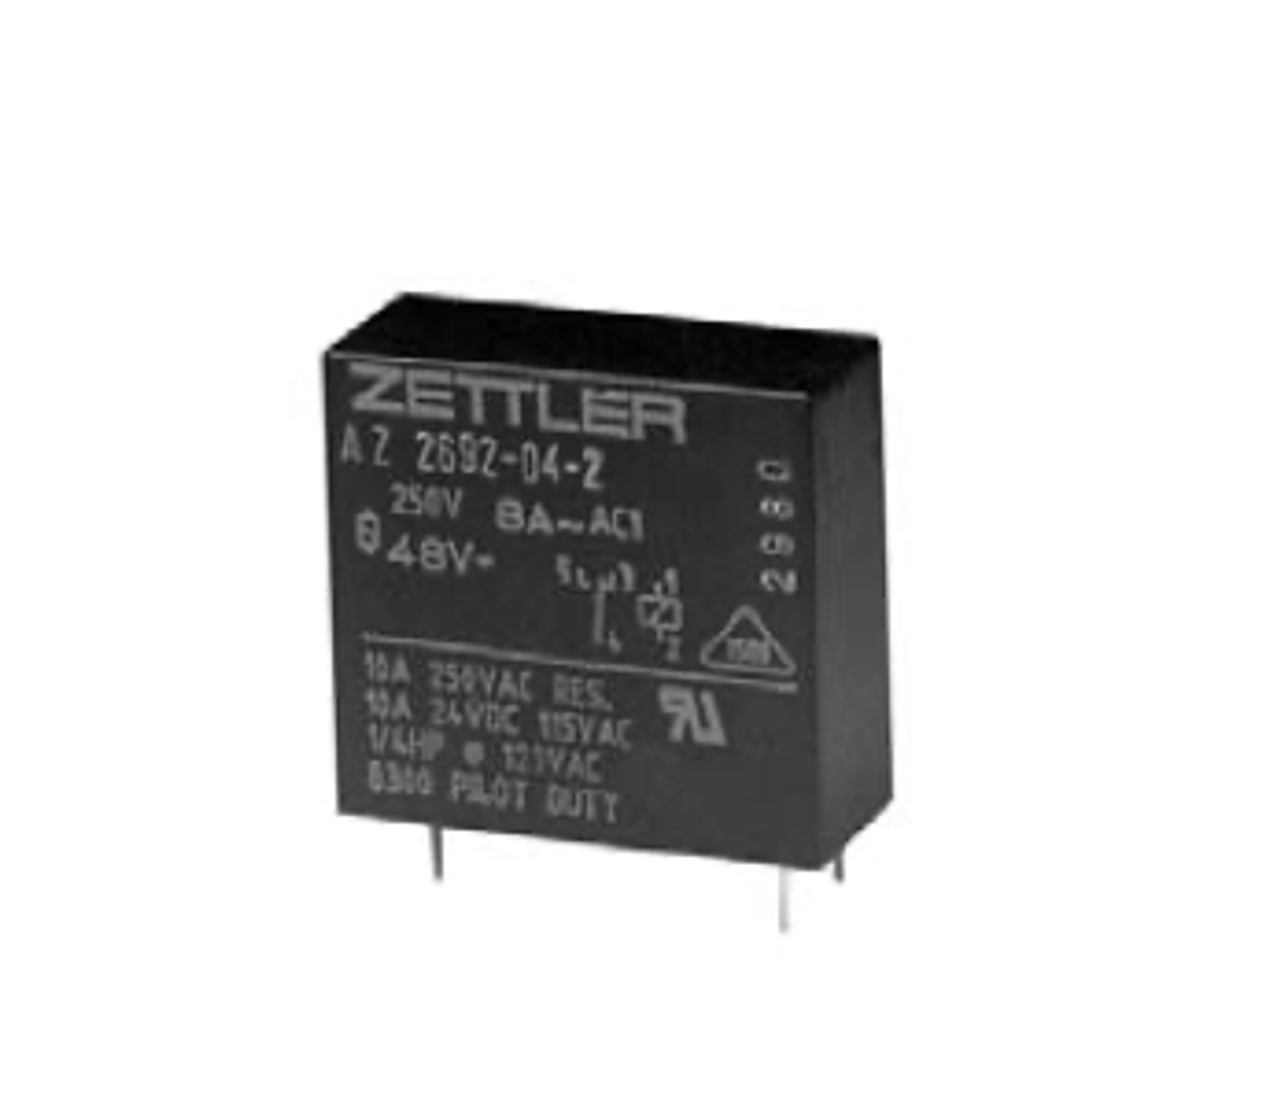 American Zettler AZ2692-08-2 Power Relay